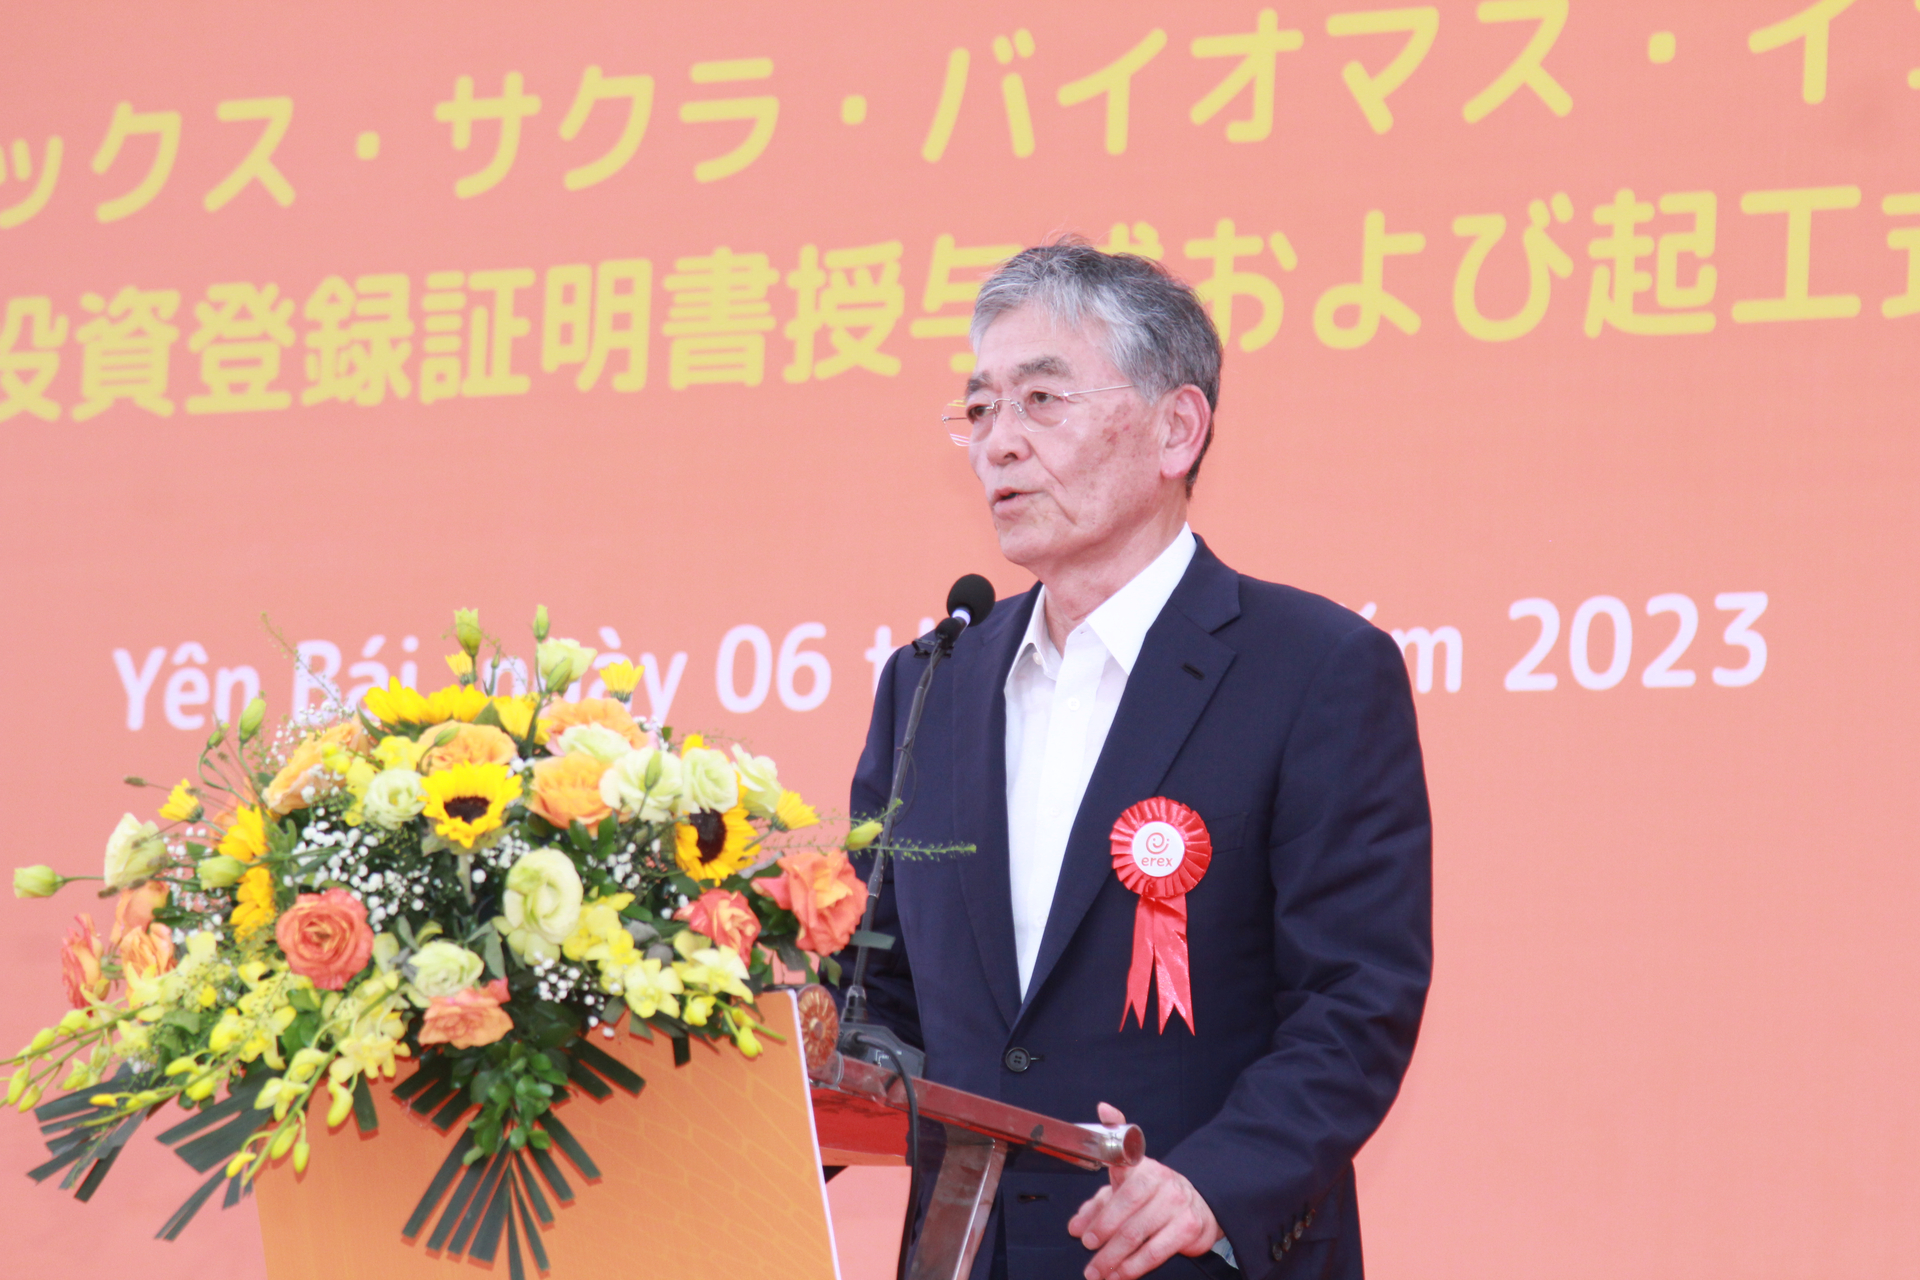 Ông Honna Hitoshi - Chủ tịch kiêm Tổng Giám đốc Công ty cổ phần EREX phát biểu tại buổi lễ. Ảnh: Thanh Tiến.